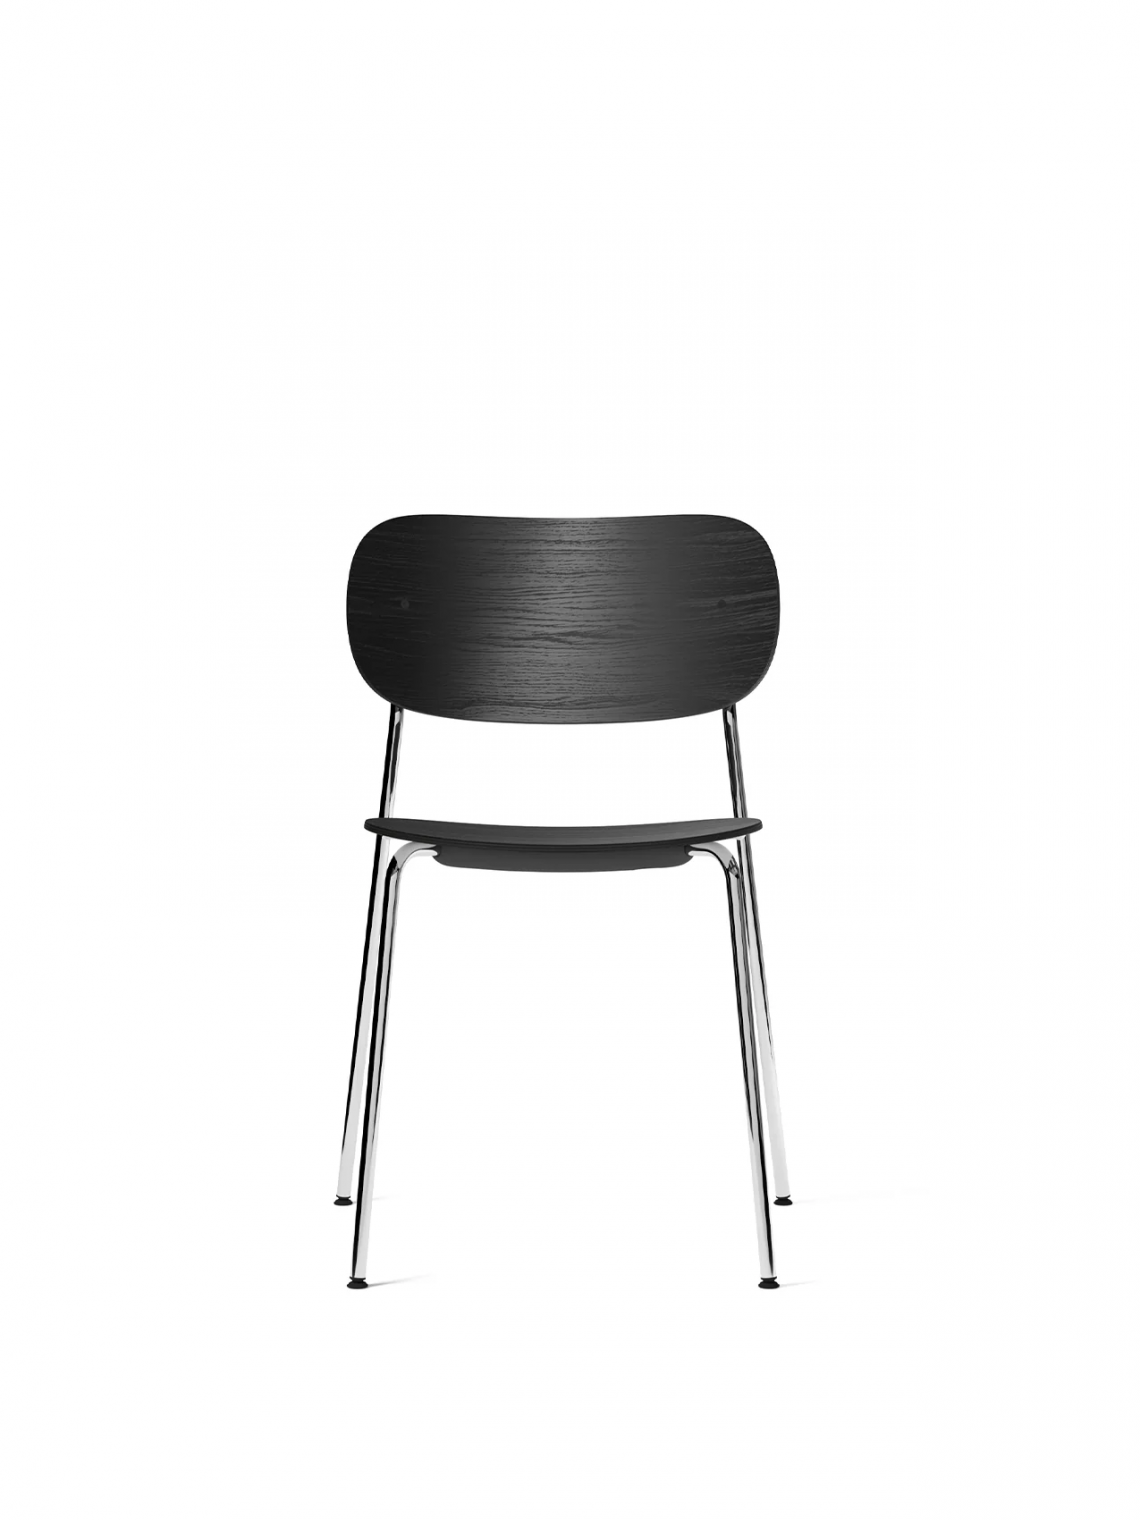 Co with armrest, Black, Veneer餐椅细节图5